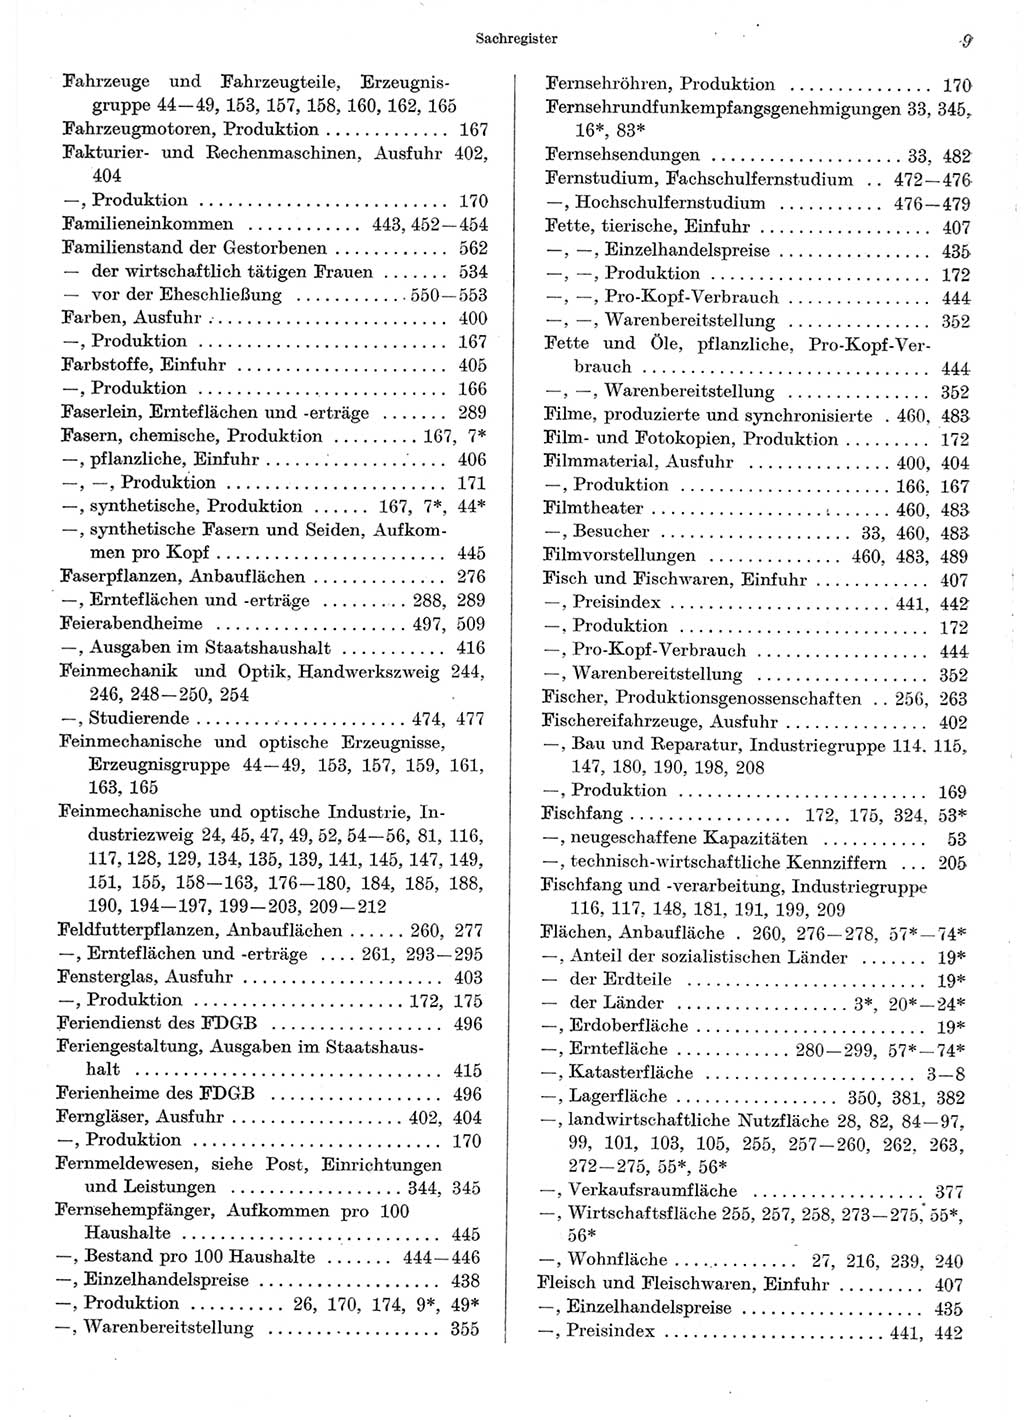 Statistisches Jahrbuch der Deutschen Demokratischen Republik (DDR) 1967, Seite 9 (Stat. Jb. DDR 1967, S. 9)